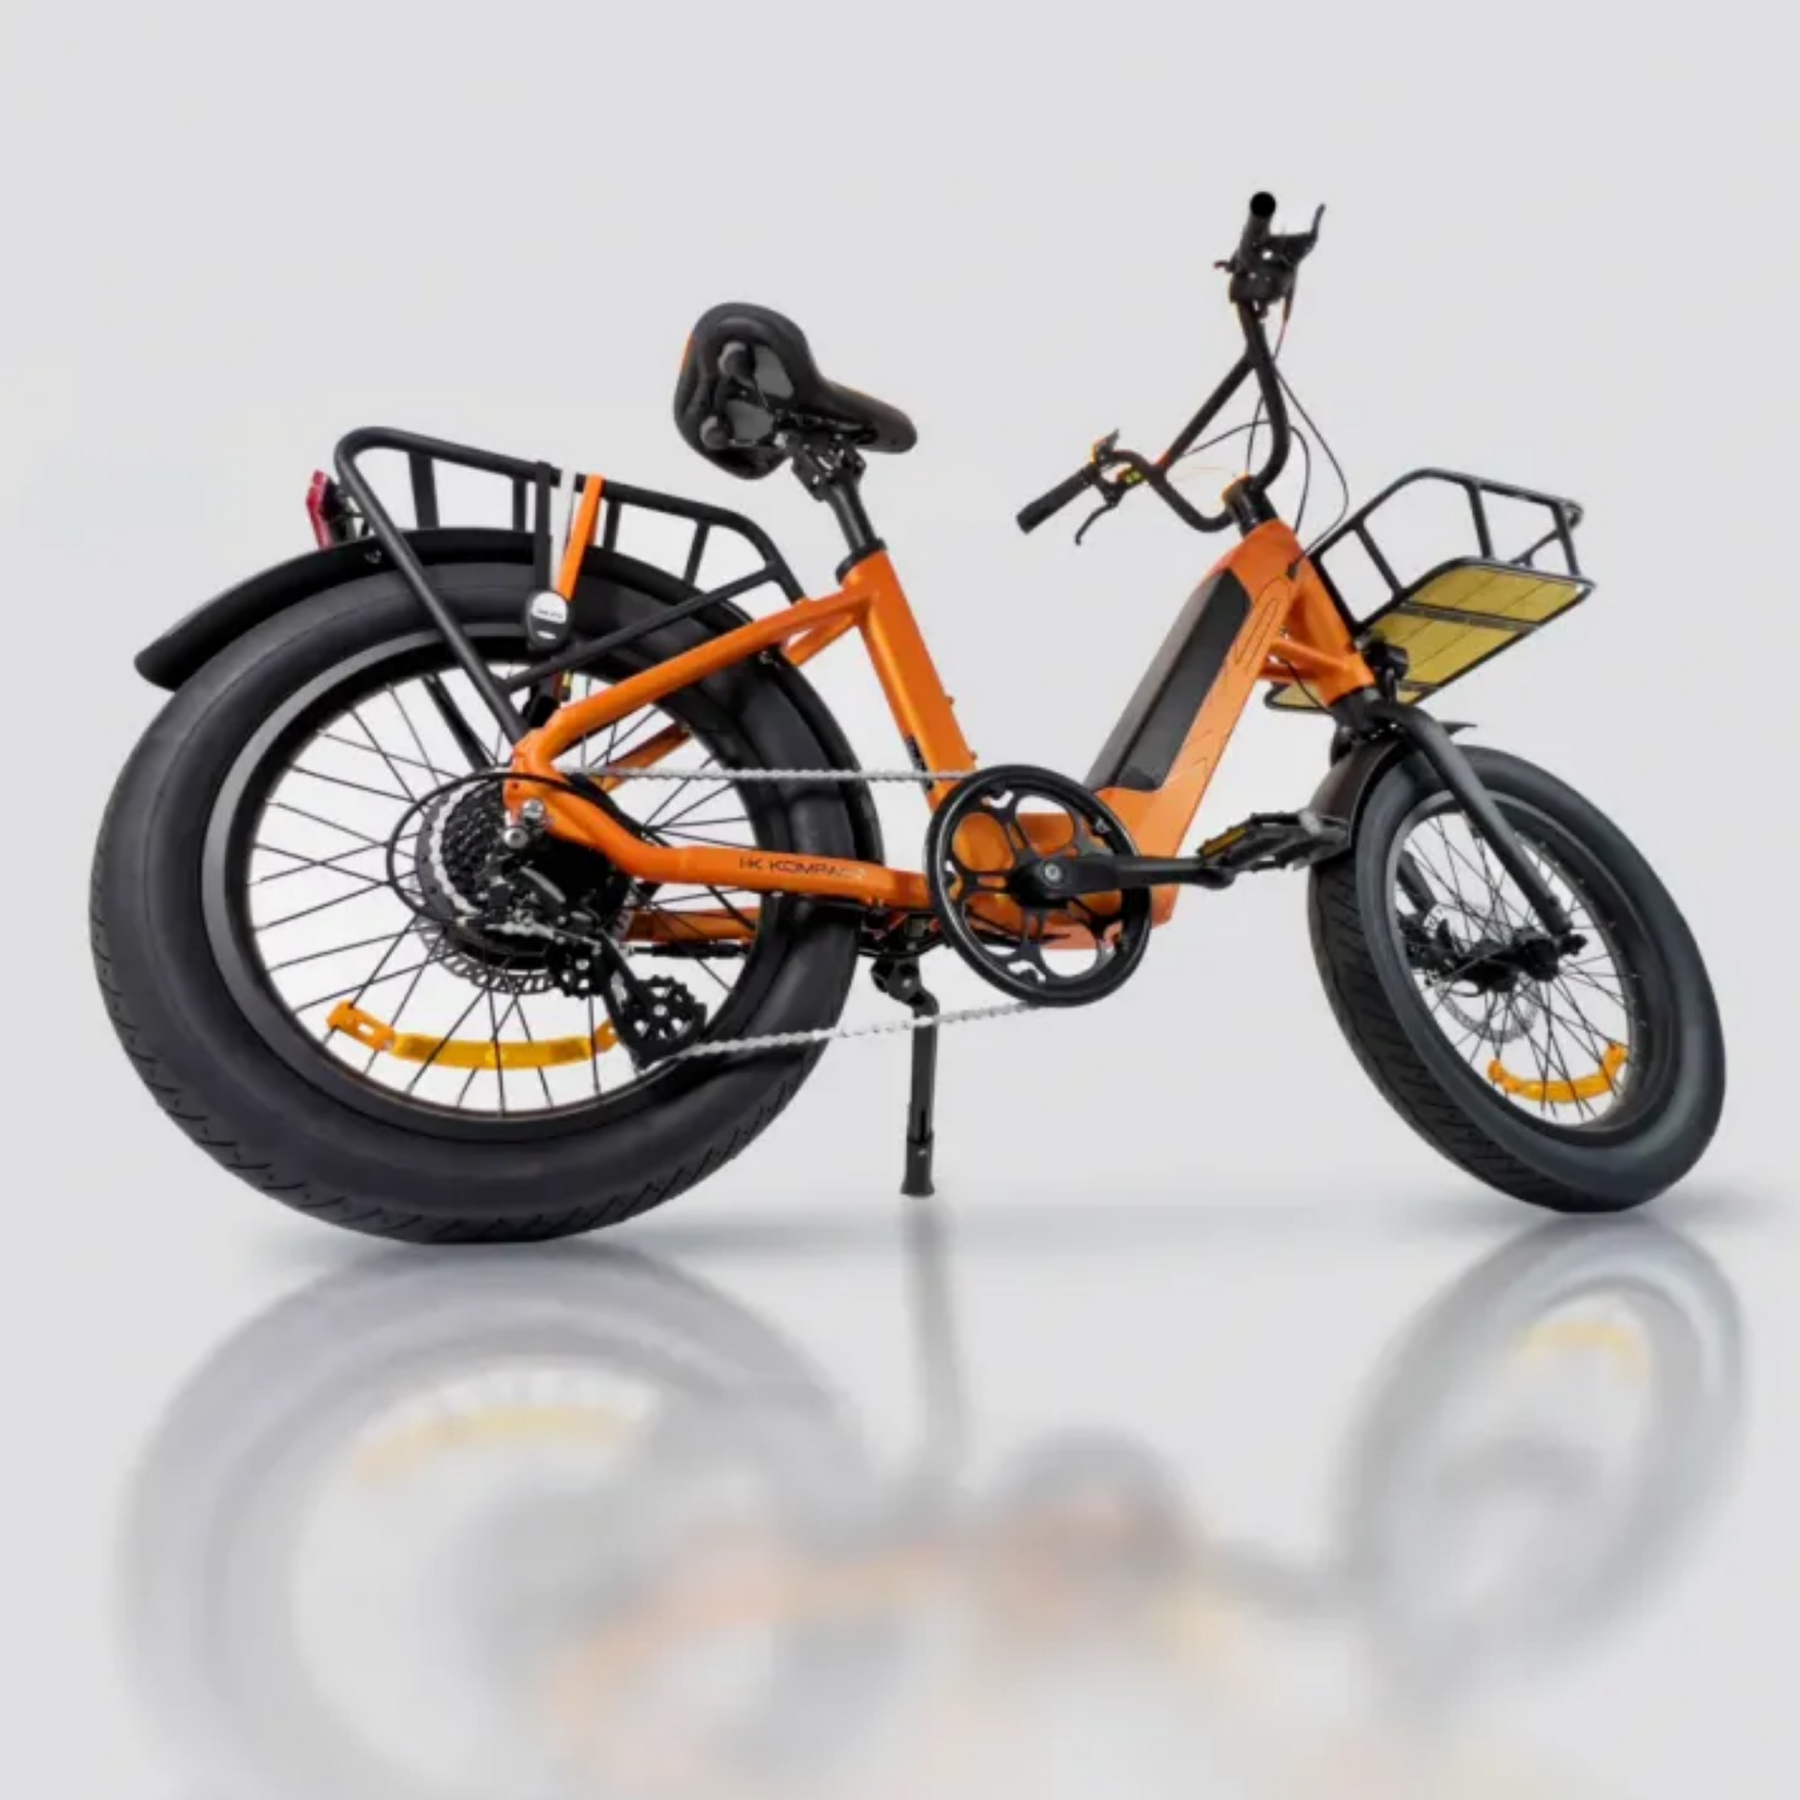 Bici elettrica da città elegance XPbike I-K kompact a pedalata assistita